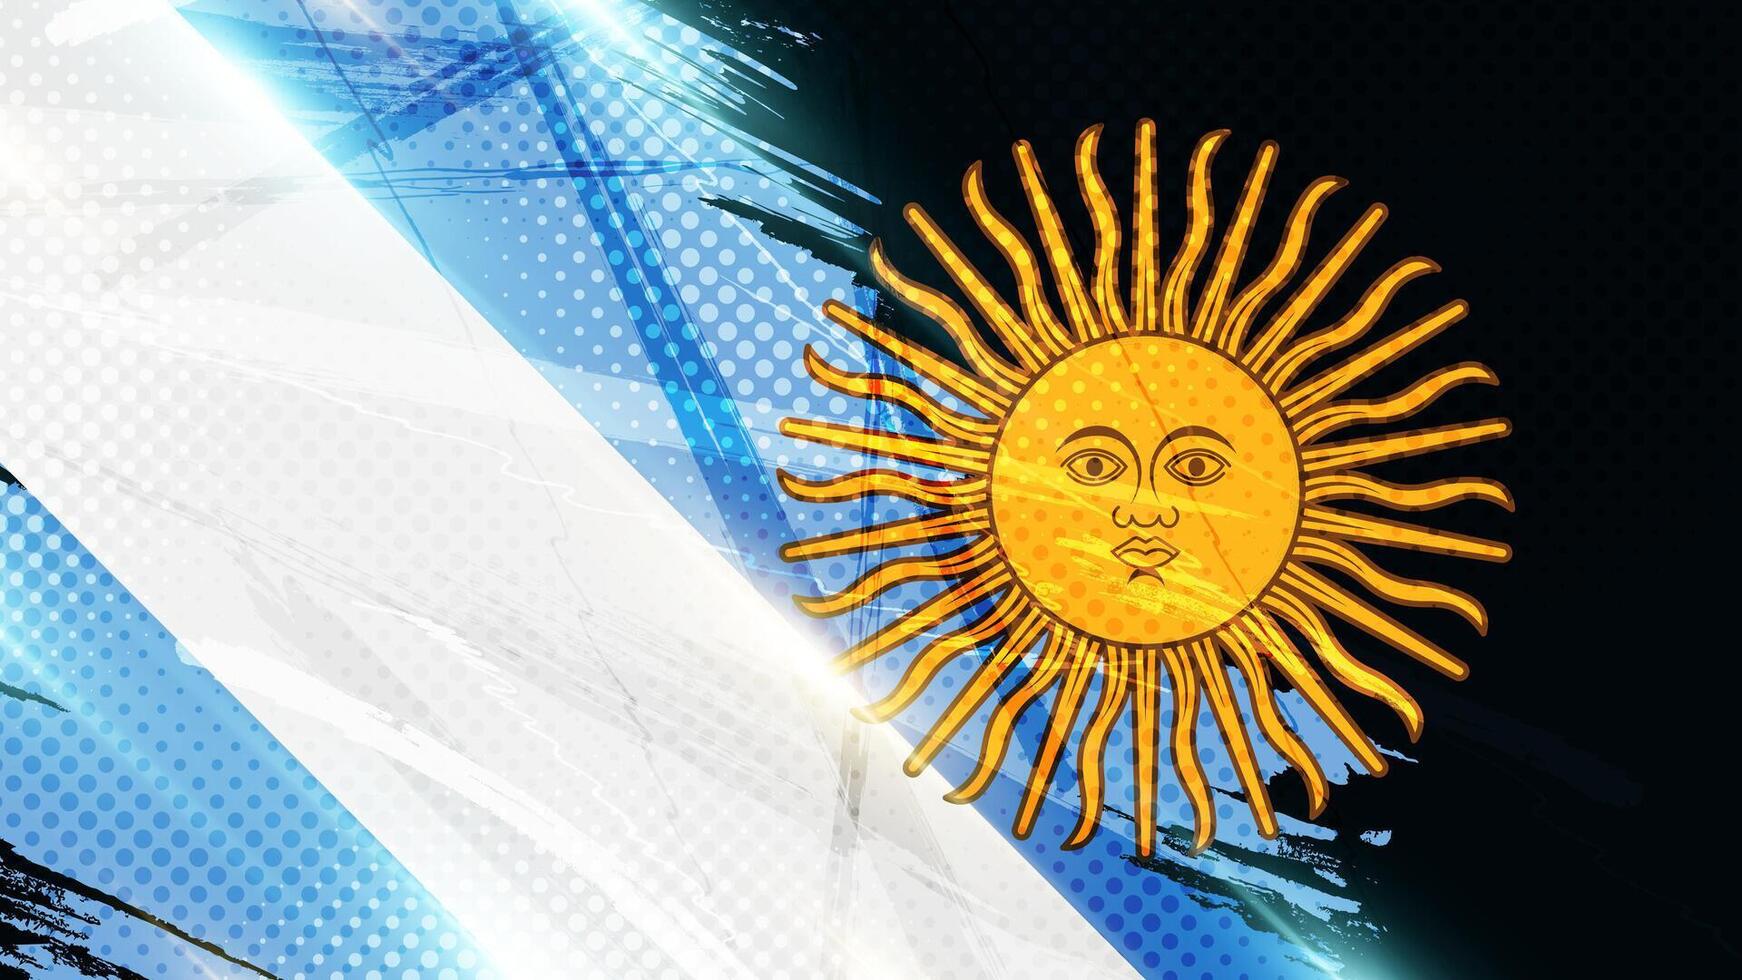 Argentinien Flagge im Grunge Bürste Farbe Stil mit Halbton und glühend Licht Auswirkungen. Argentinier Flagge im Grunge Konzept vektor